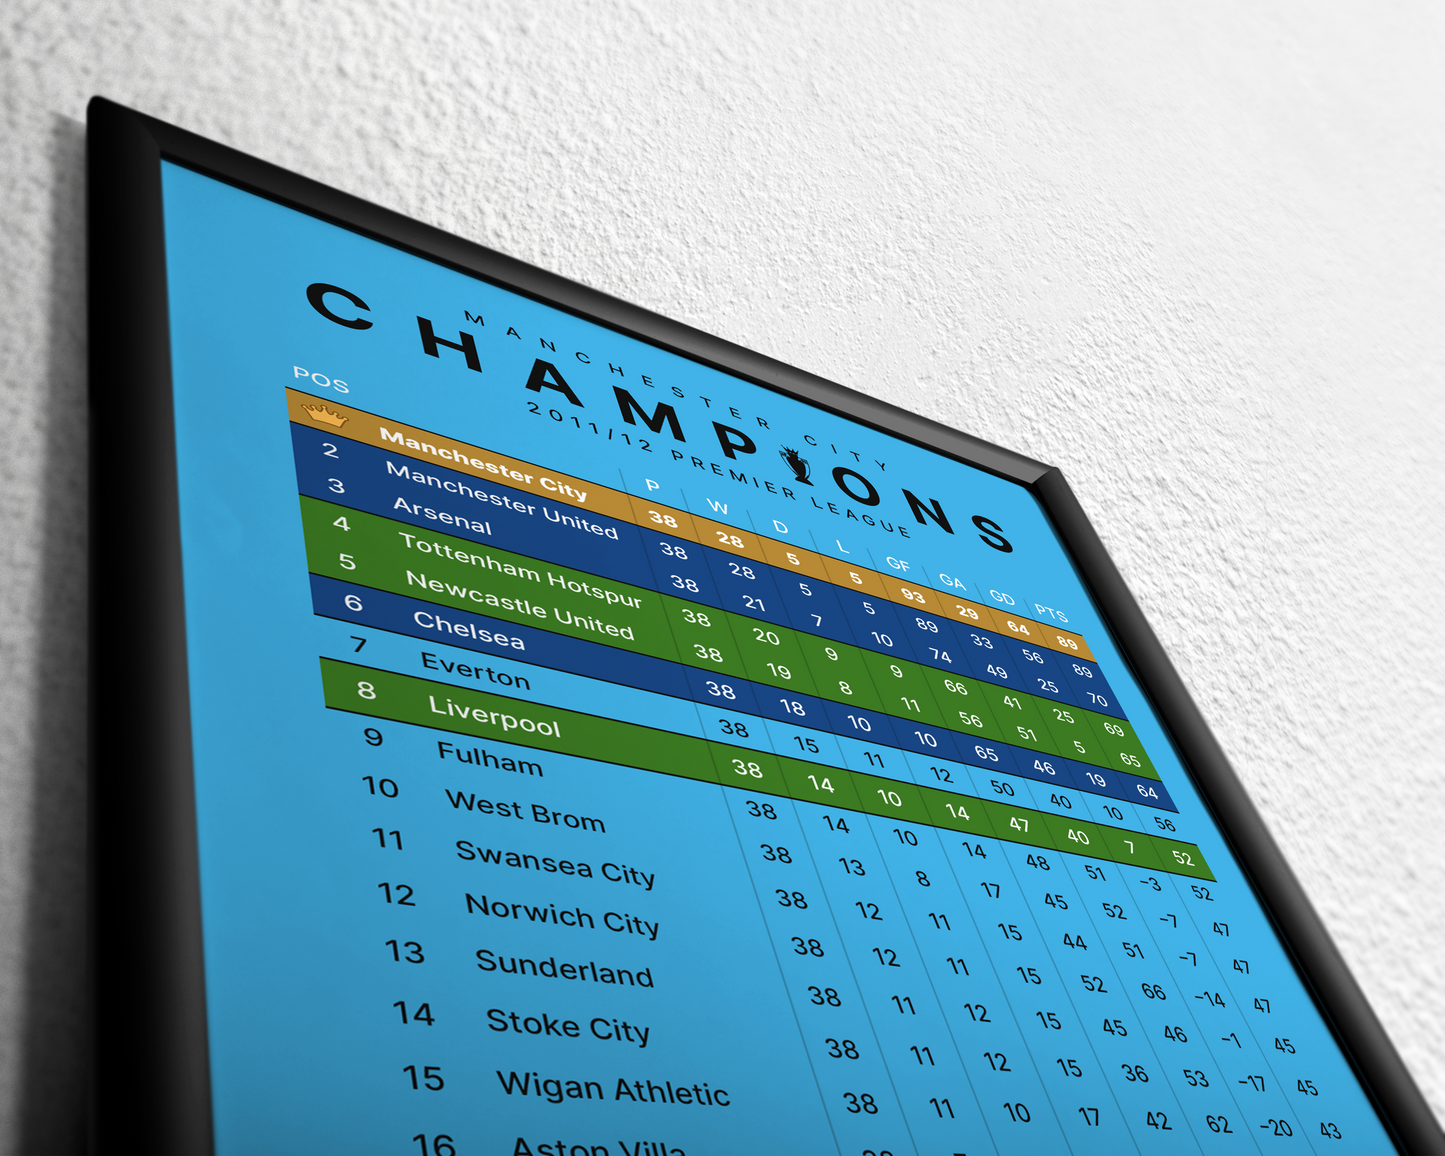 Champions! 2011/12 Premier League Table